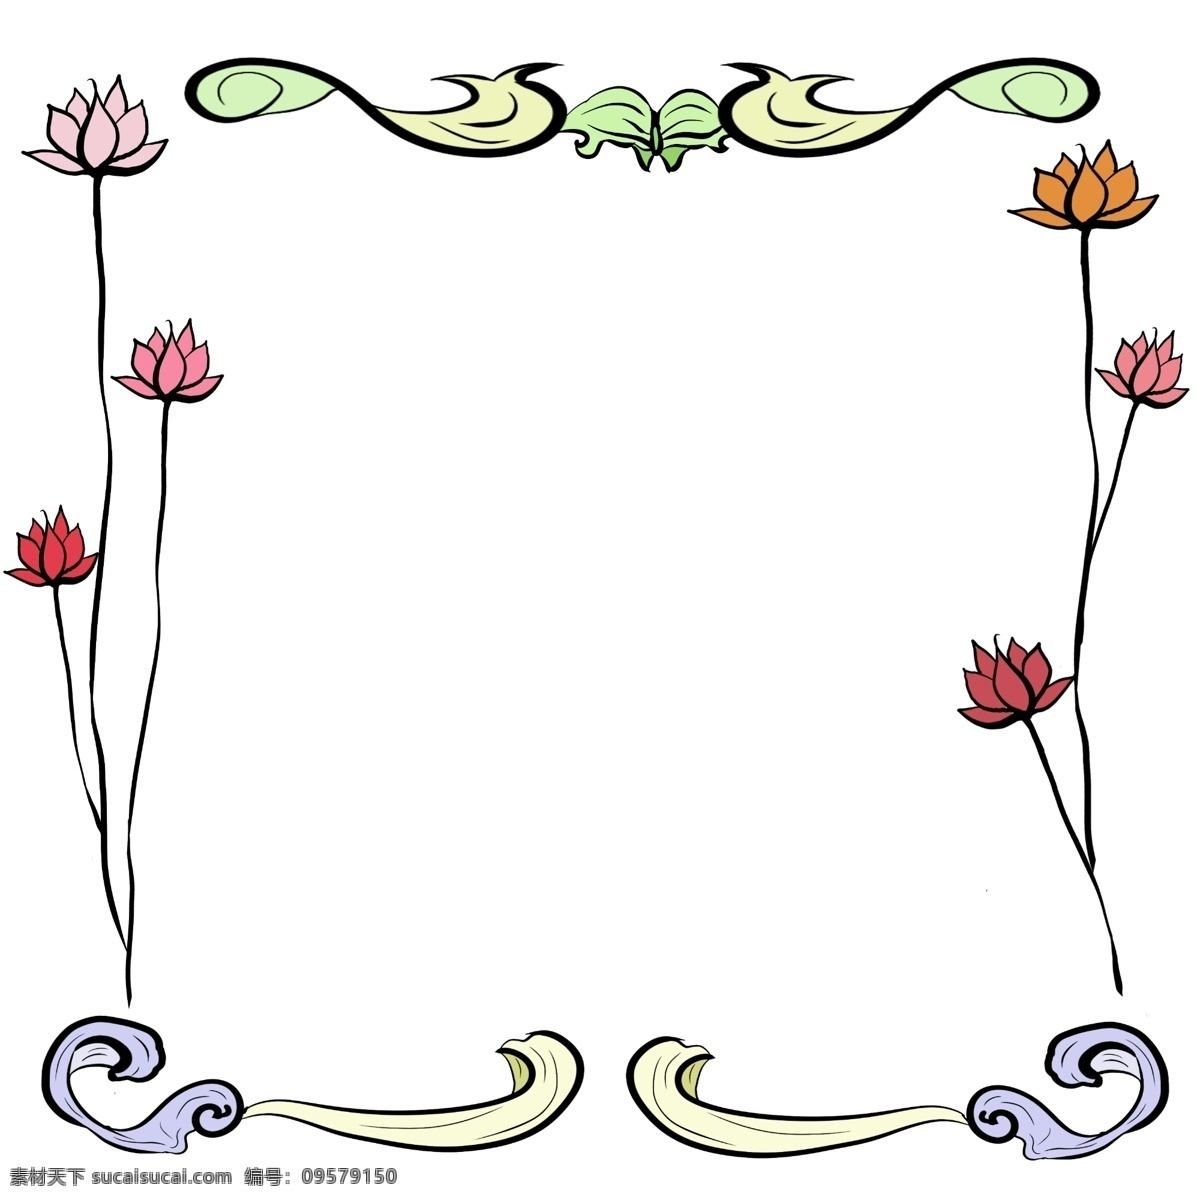 创意 鲜花 边框 插画 盛开的荷花 植物插画 花朵边框插画 边框插画 红色边框插画 花朵 植物边框插画